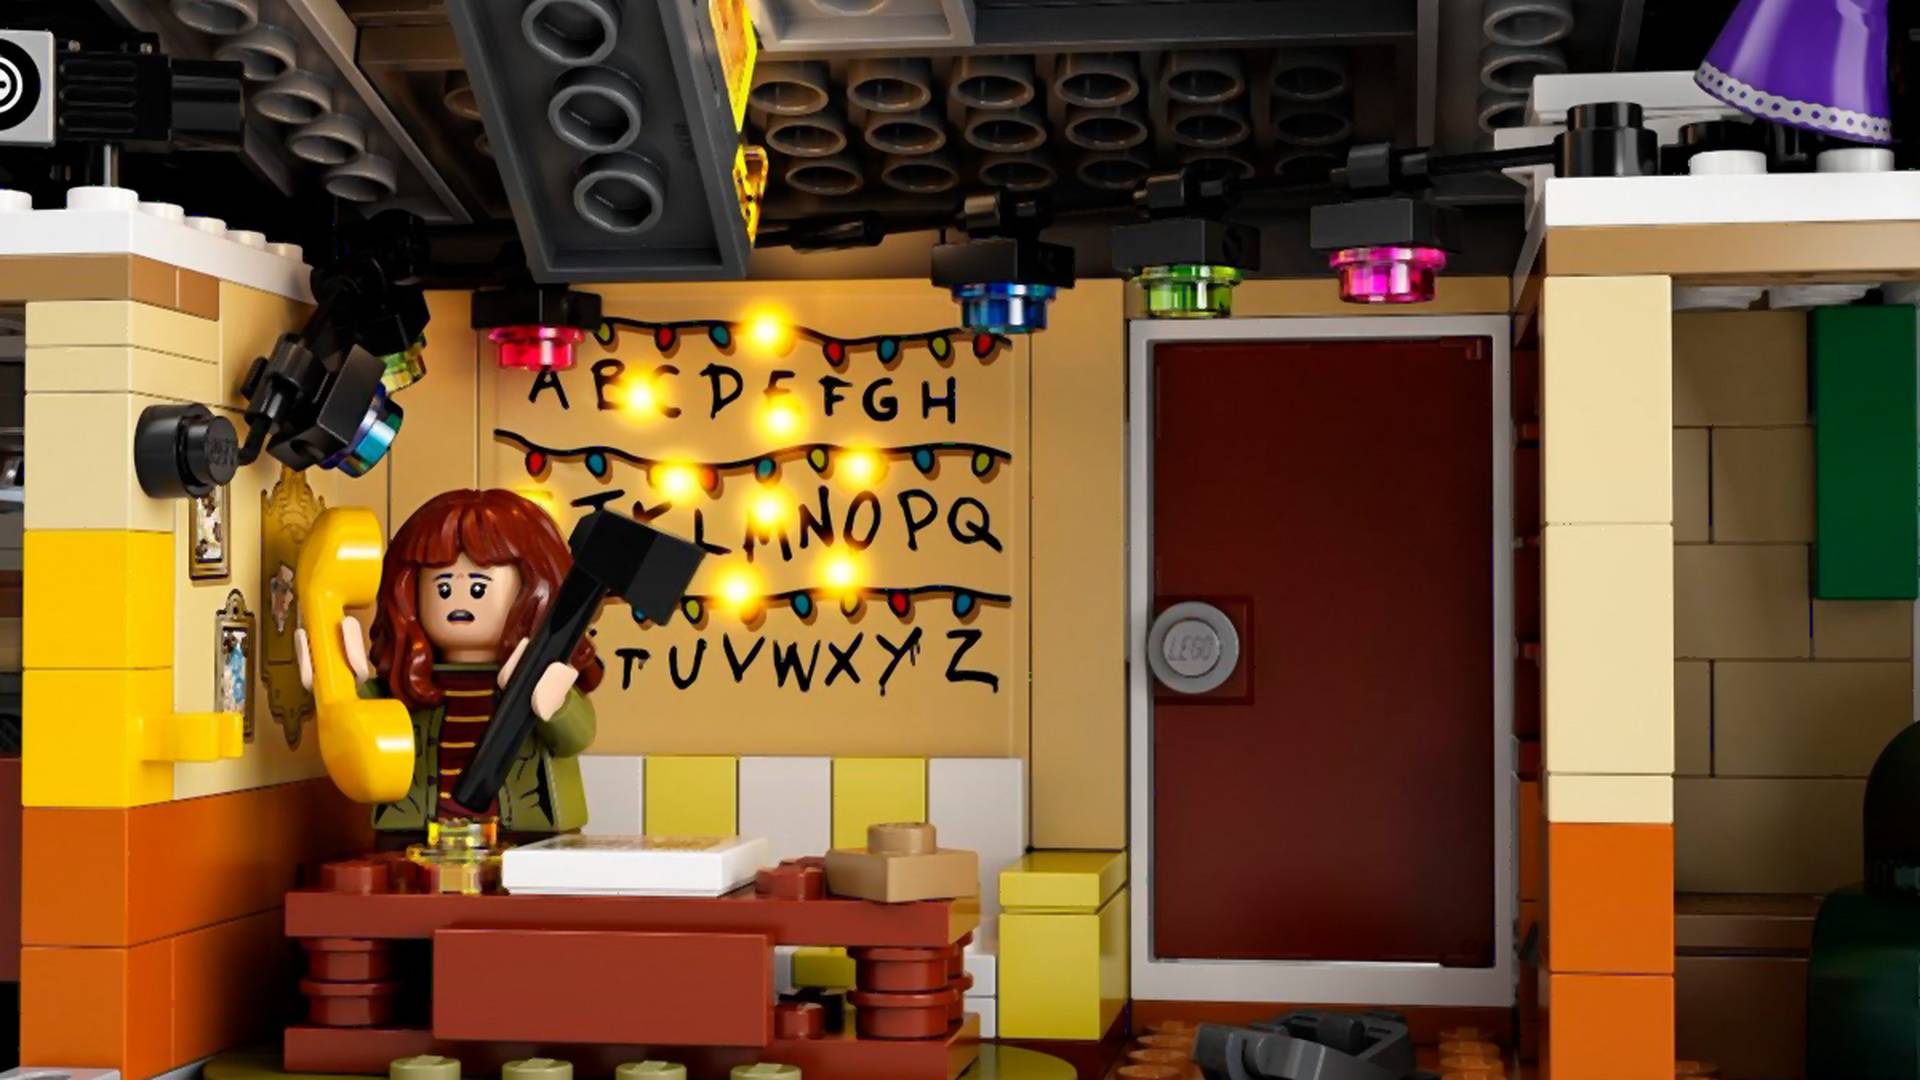 Bohaterowie "Stranger Things" w zestawie Lego. Trzeci sezon serialu już w wakacje